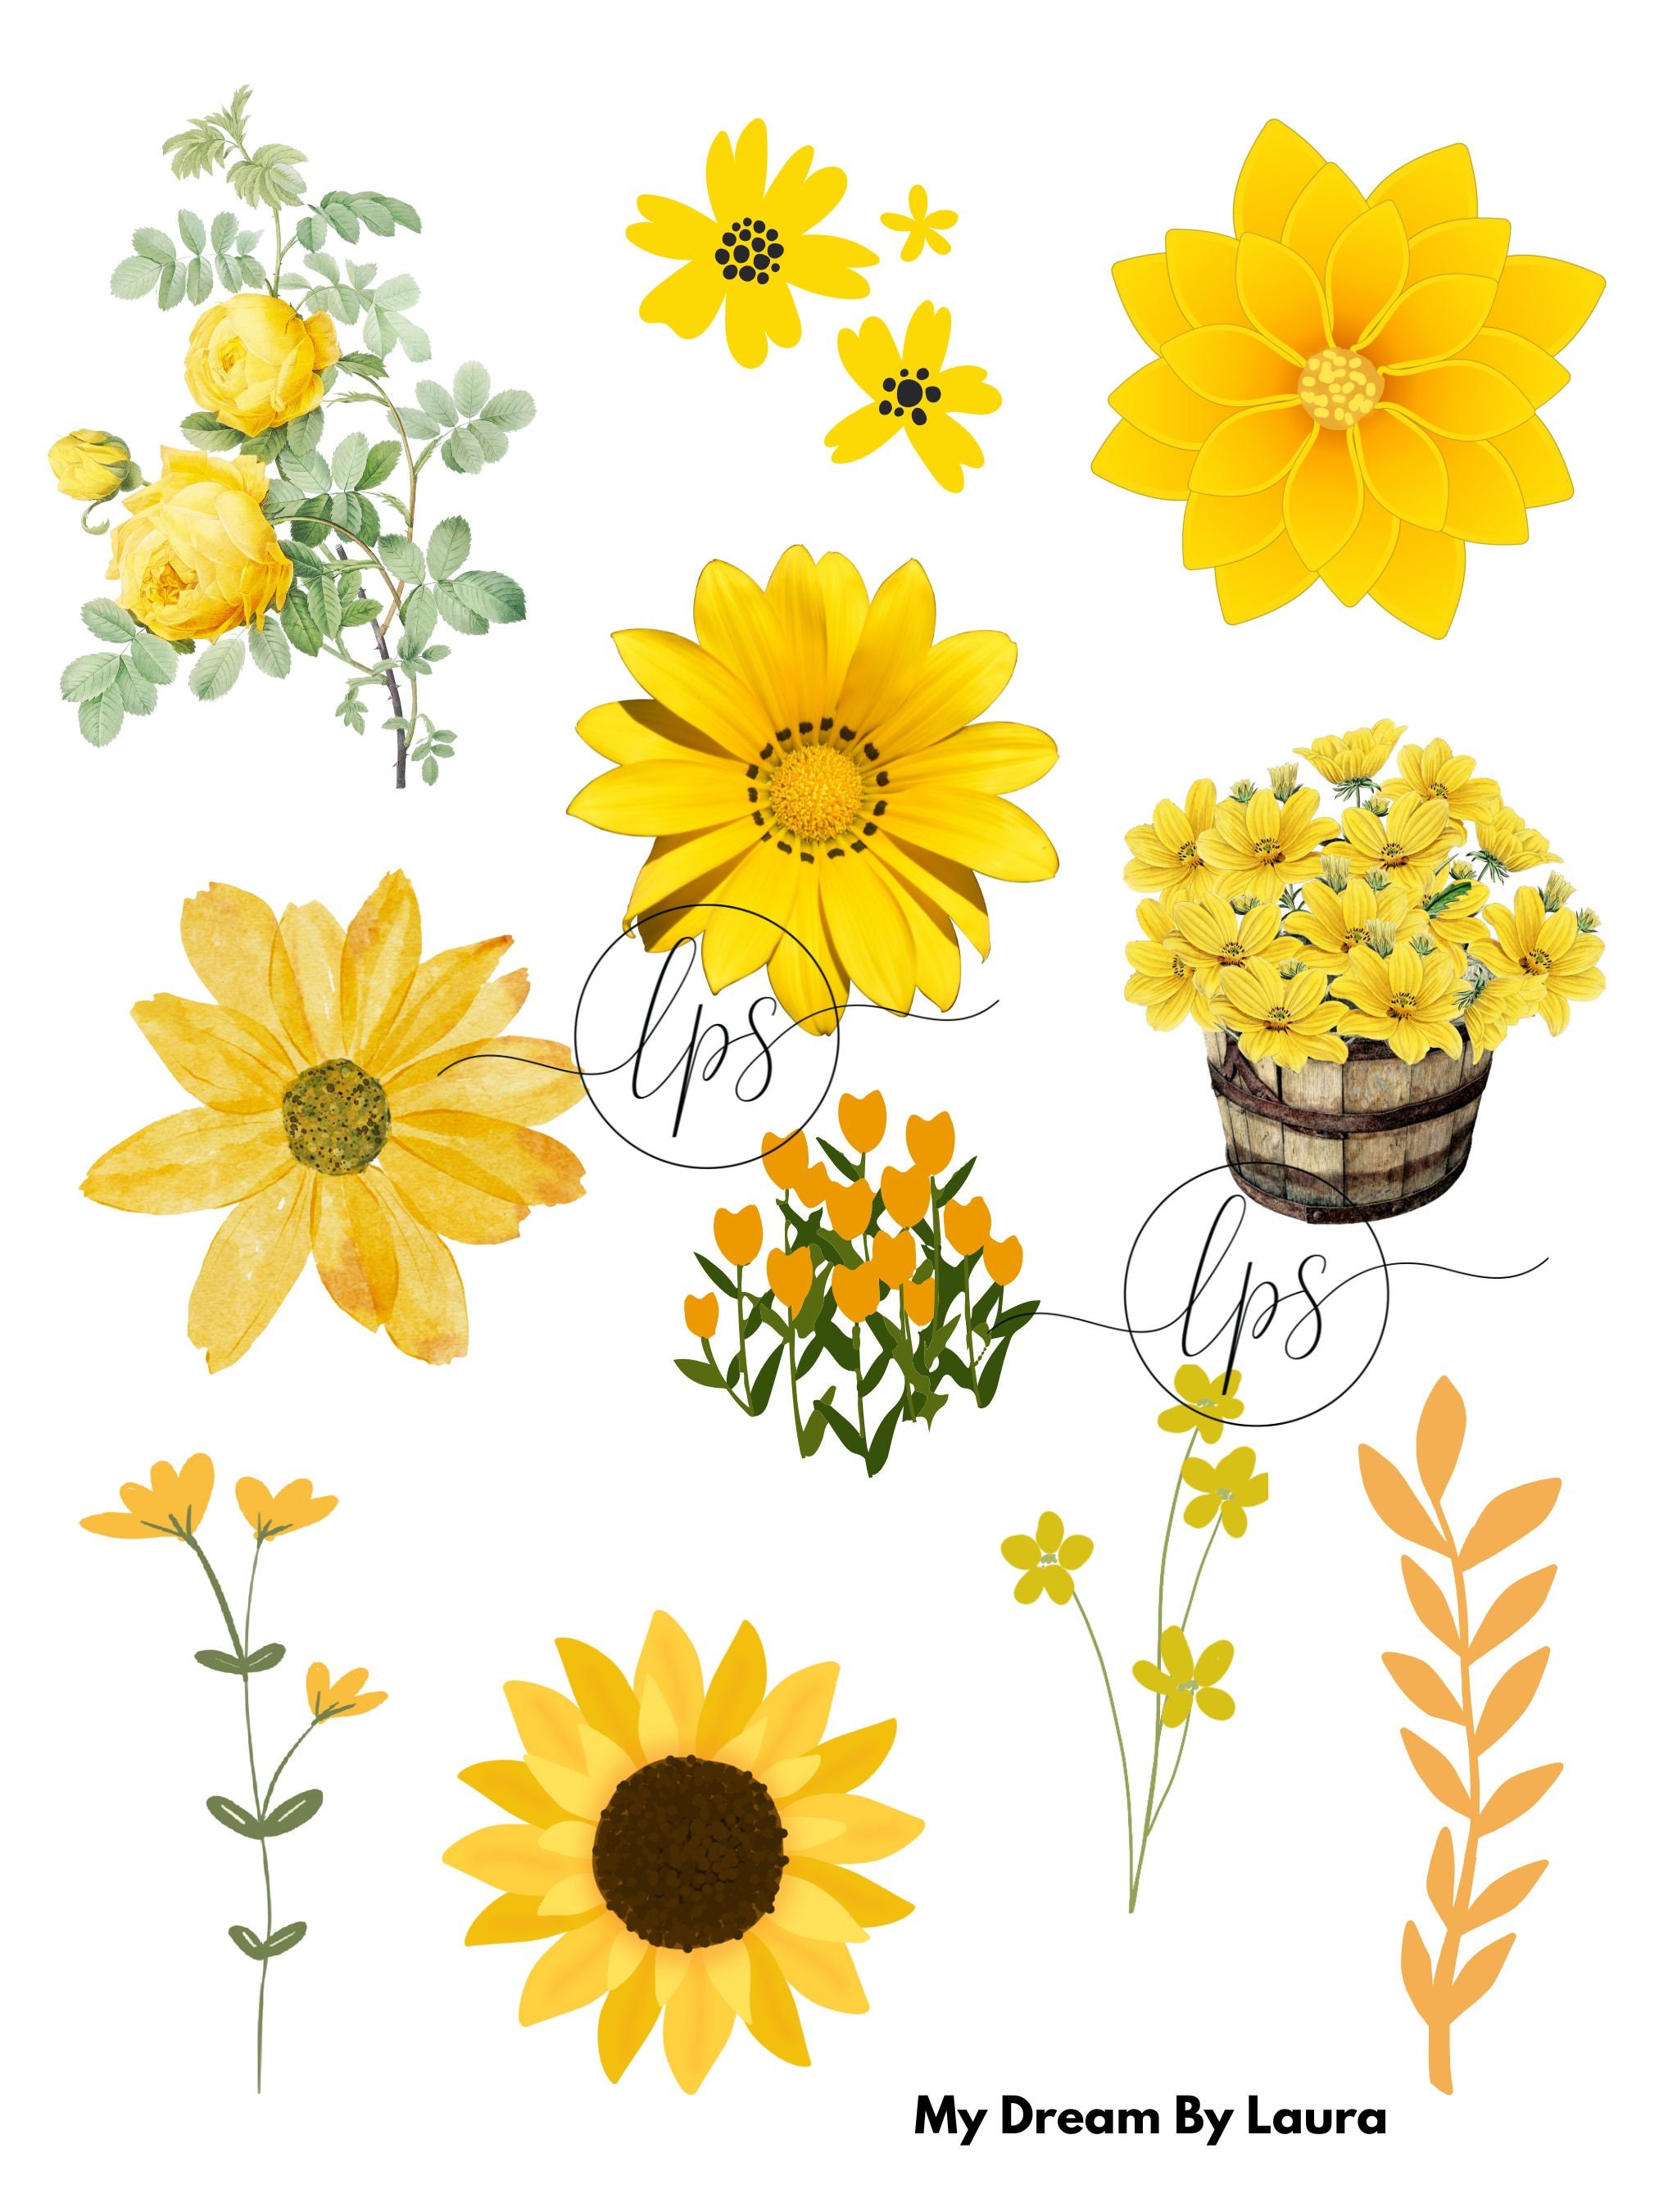 Digital Download - Sunflower Reading Journaling Stickers – Erin Floto  Designs